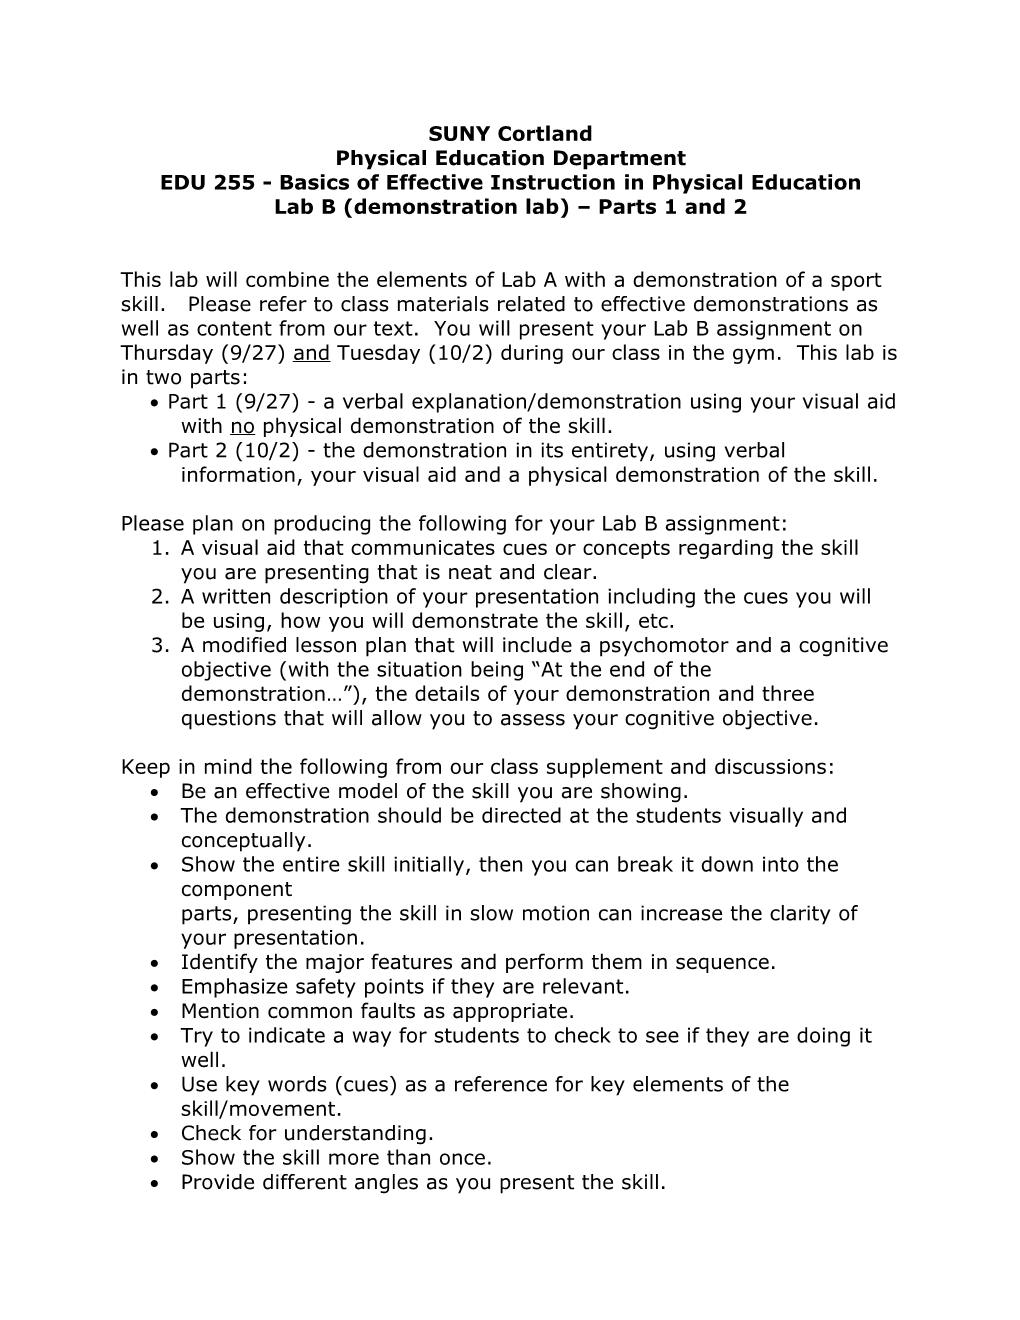 EDU 255 - Basics of Effective Instructionin Physical Education